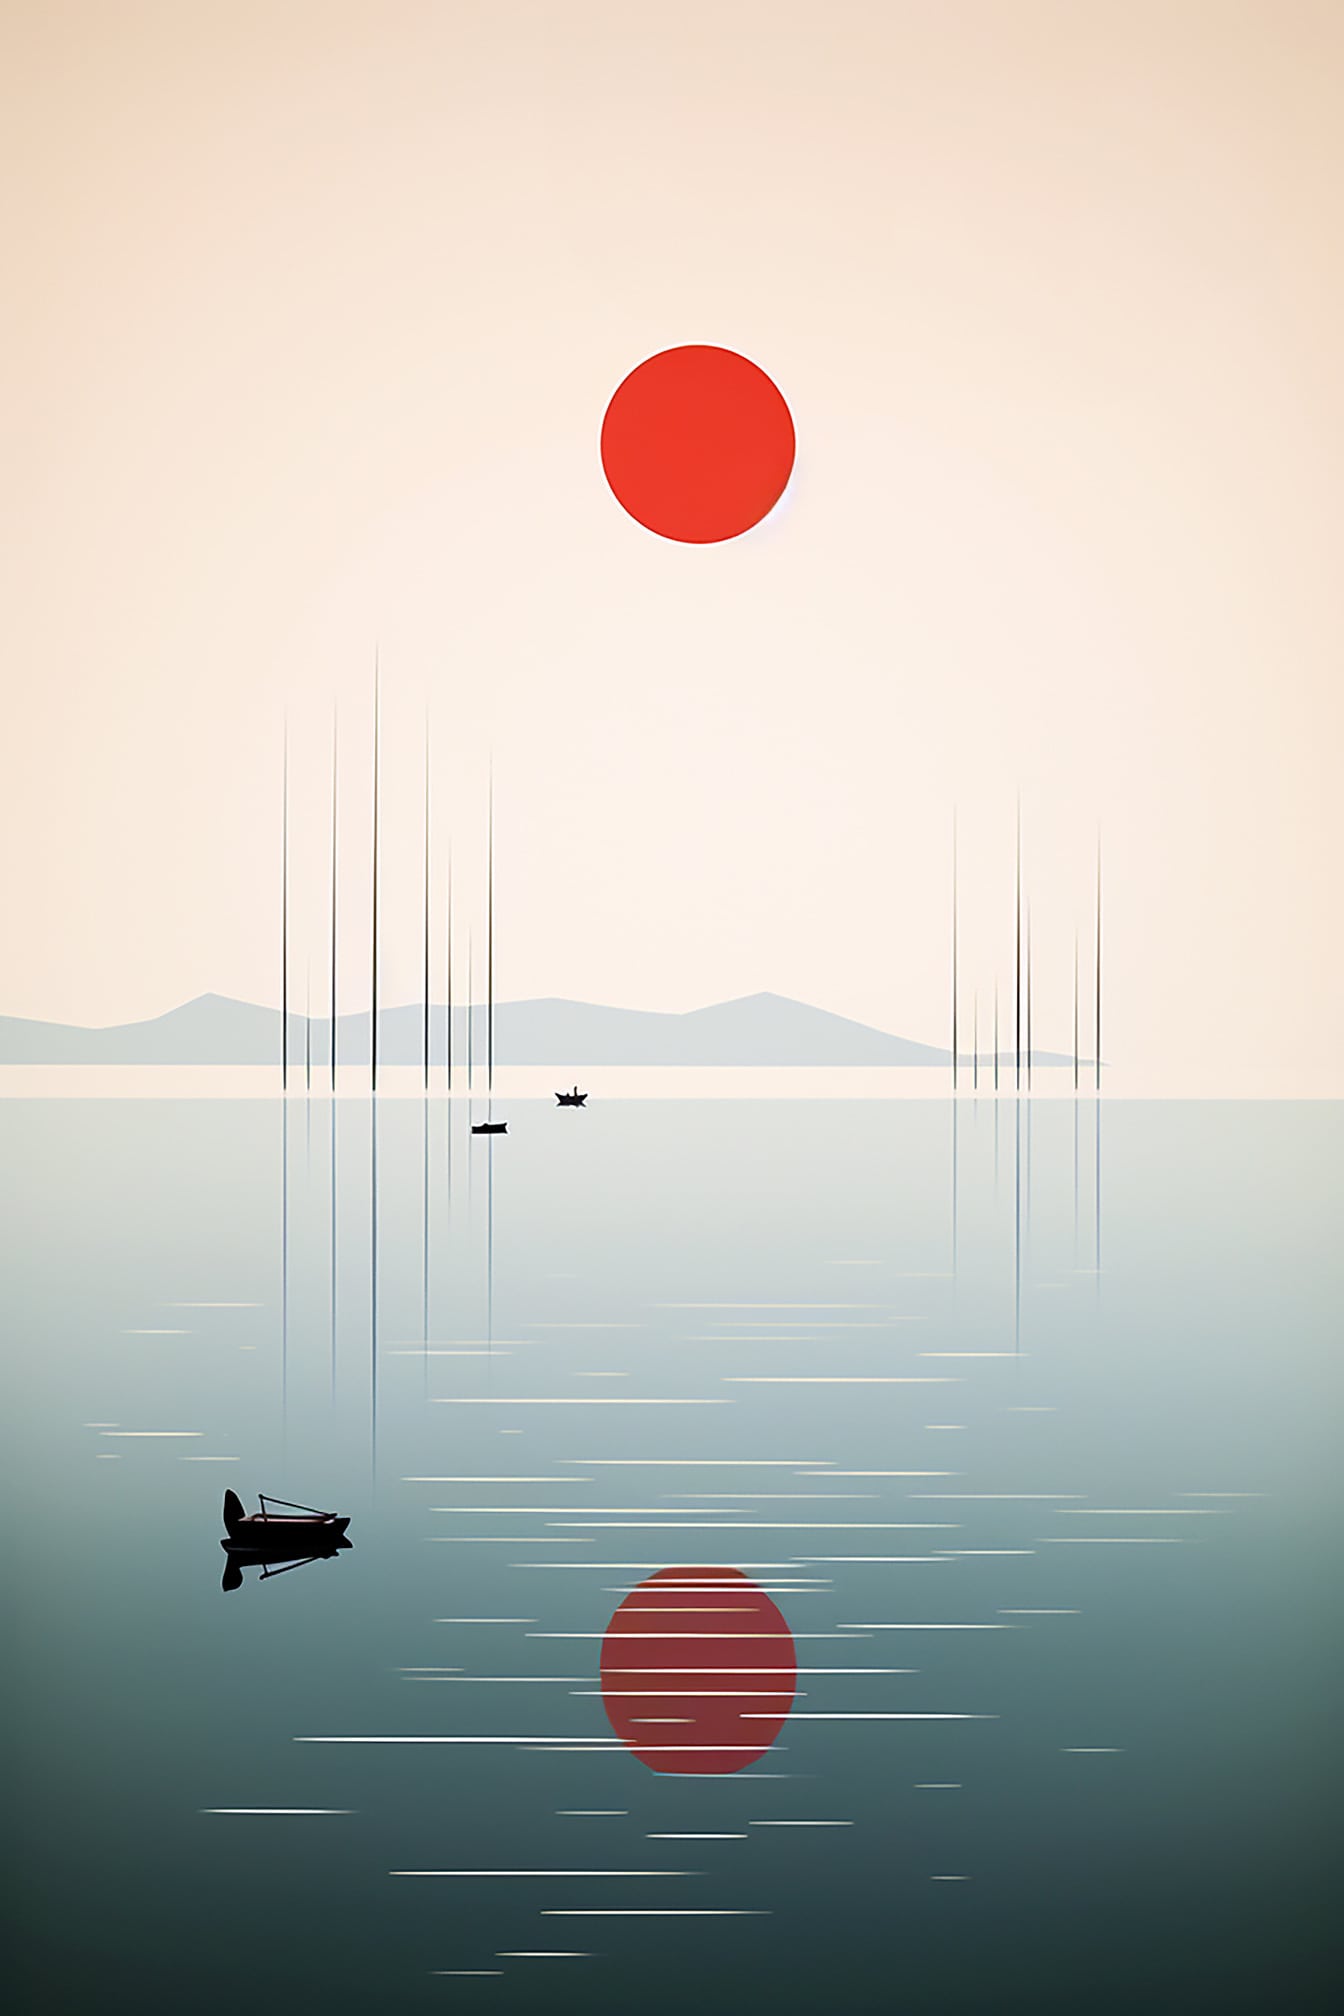 Ілюстрація в стилі мінімалізм з відображенням темно-червоного сонця на рівні води